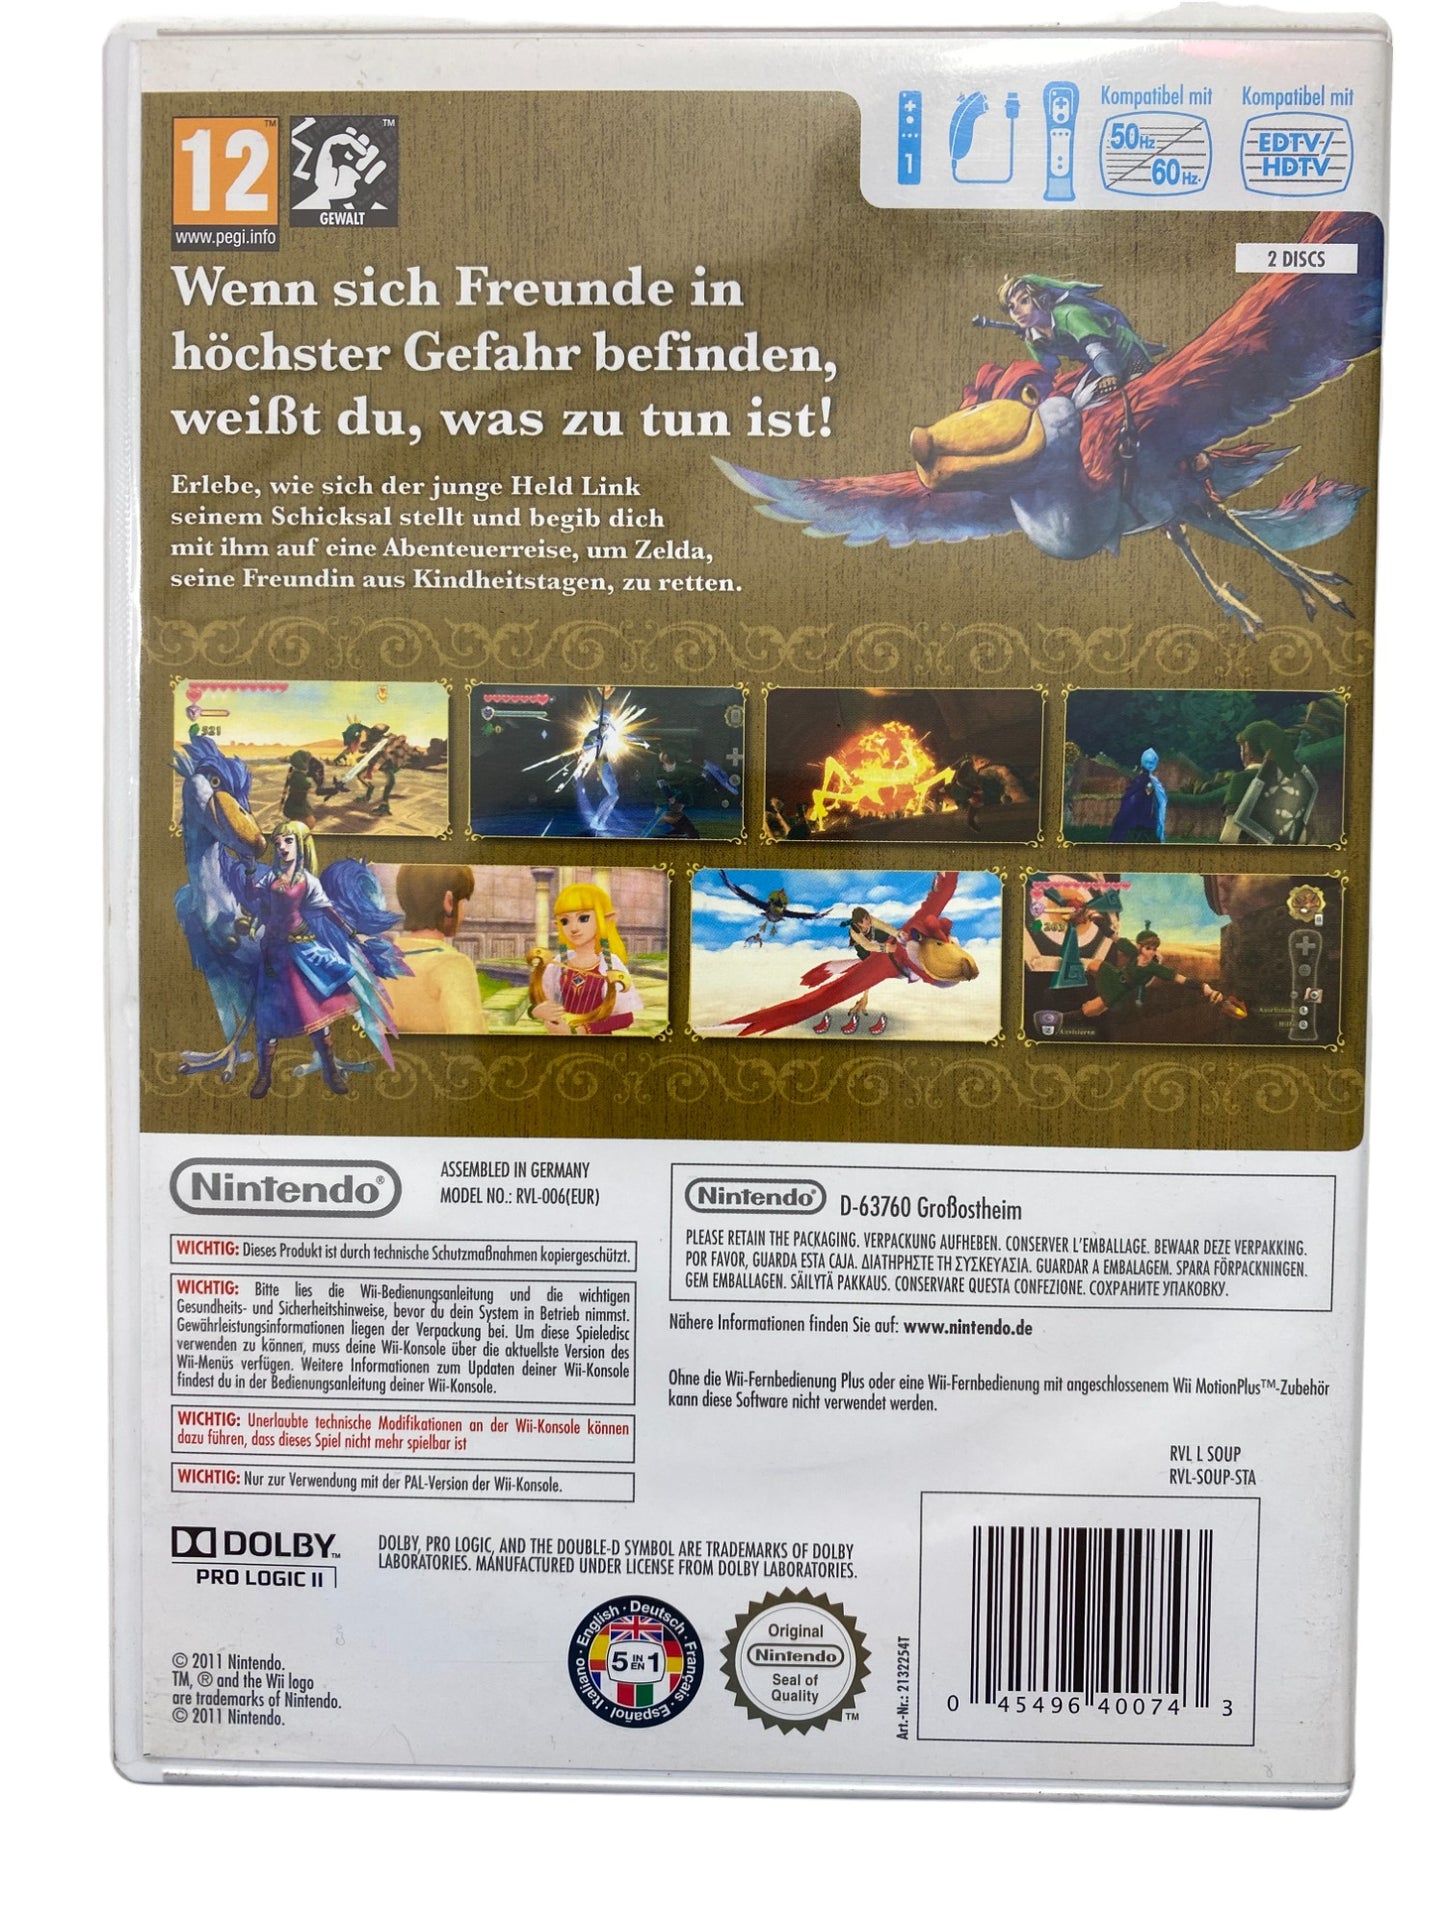 The Legend of Zelda: Skyward Sword - Special Edition - Nintendo Wii